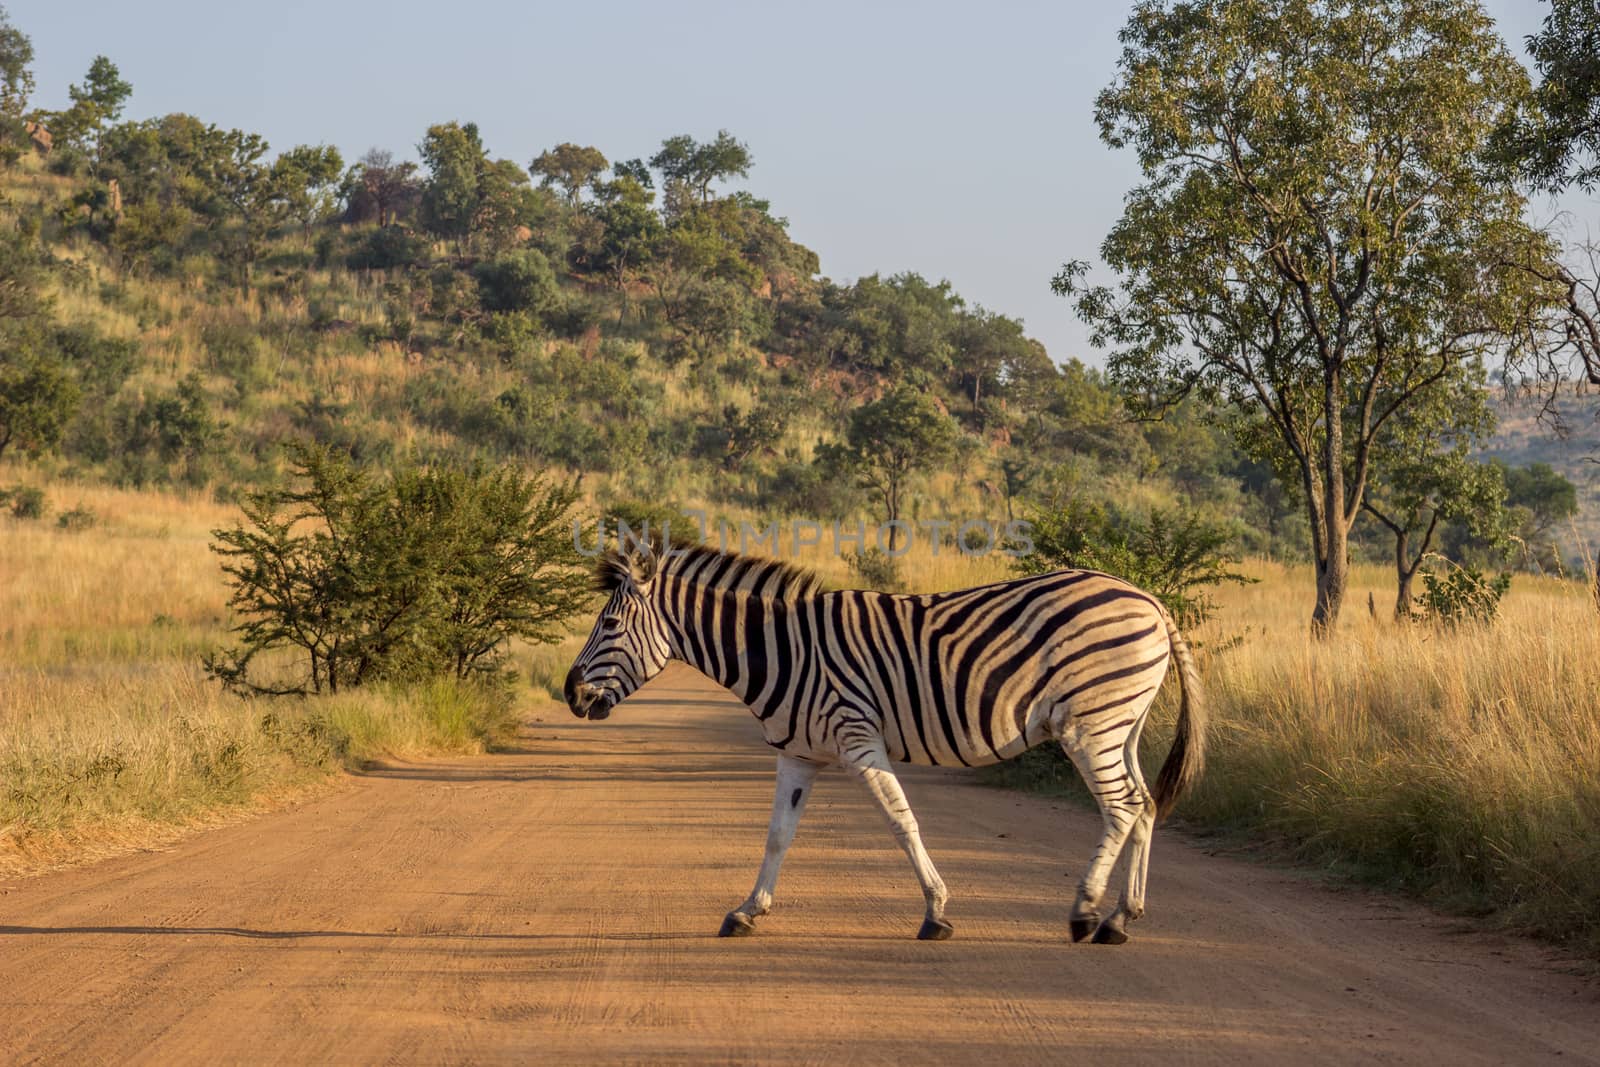 burchels Zebra crossing a road by RiaanAlbrecht